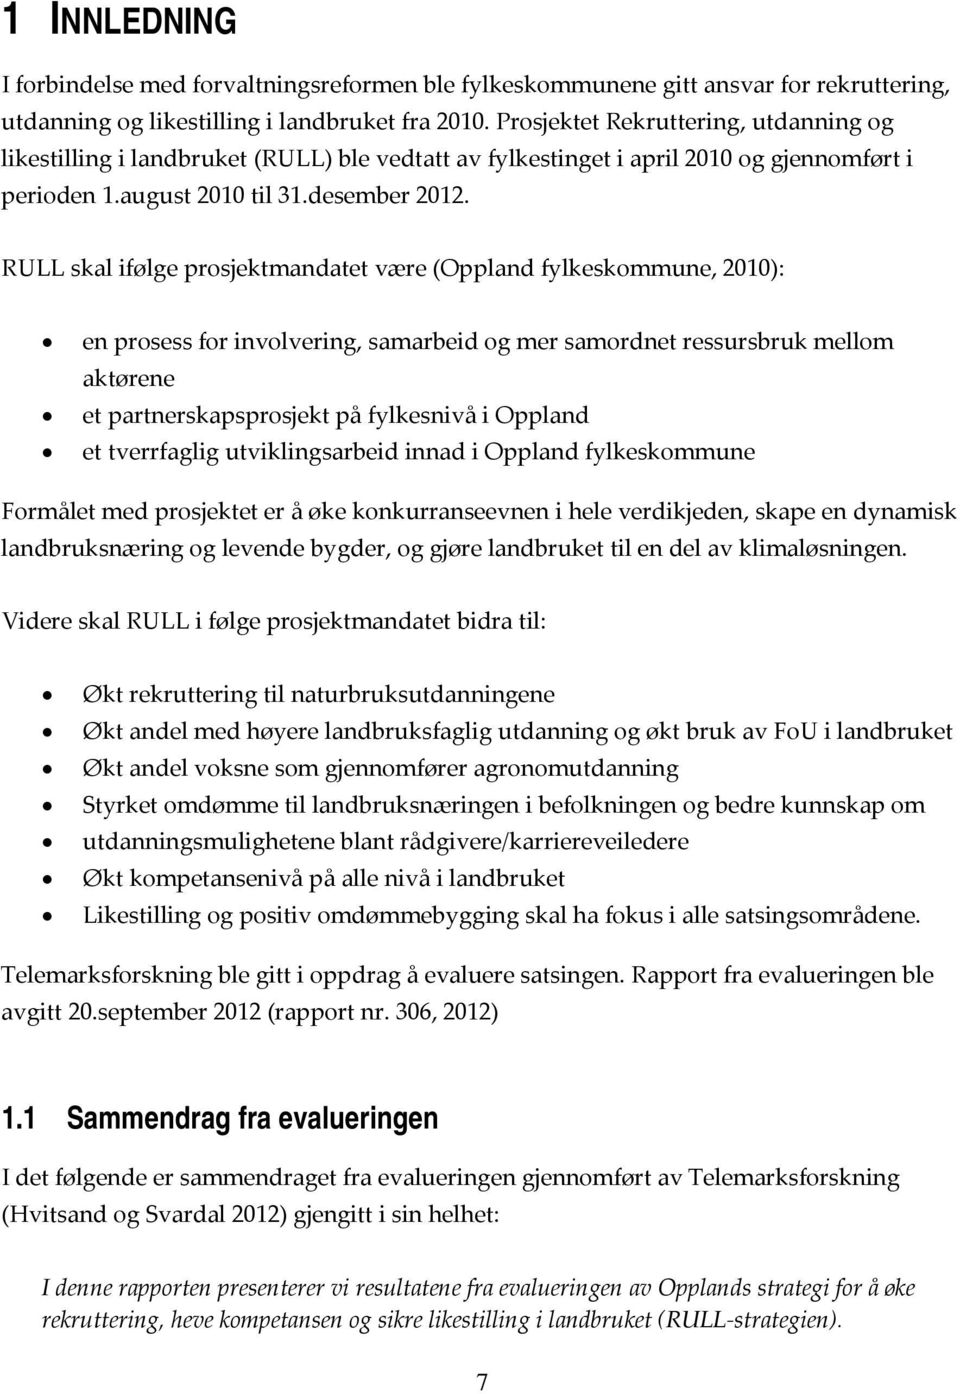 RULL skal ifølge prosjektmandatet være (Oppland fylkeskommune, 2010): en prosess for involvering, samarbeid og mer samordnet ressursbruk mellom aktørene et partnerskapsprosjekt på fylkesnivå i